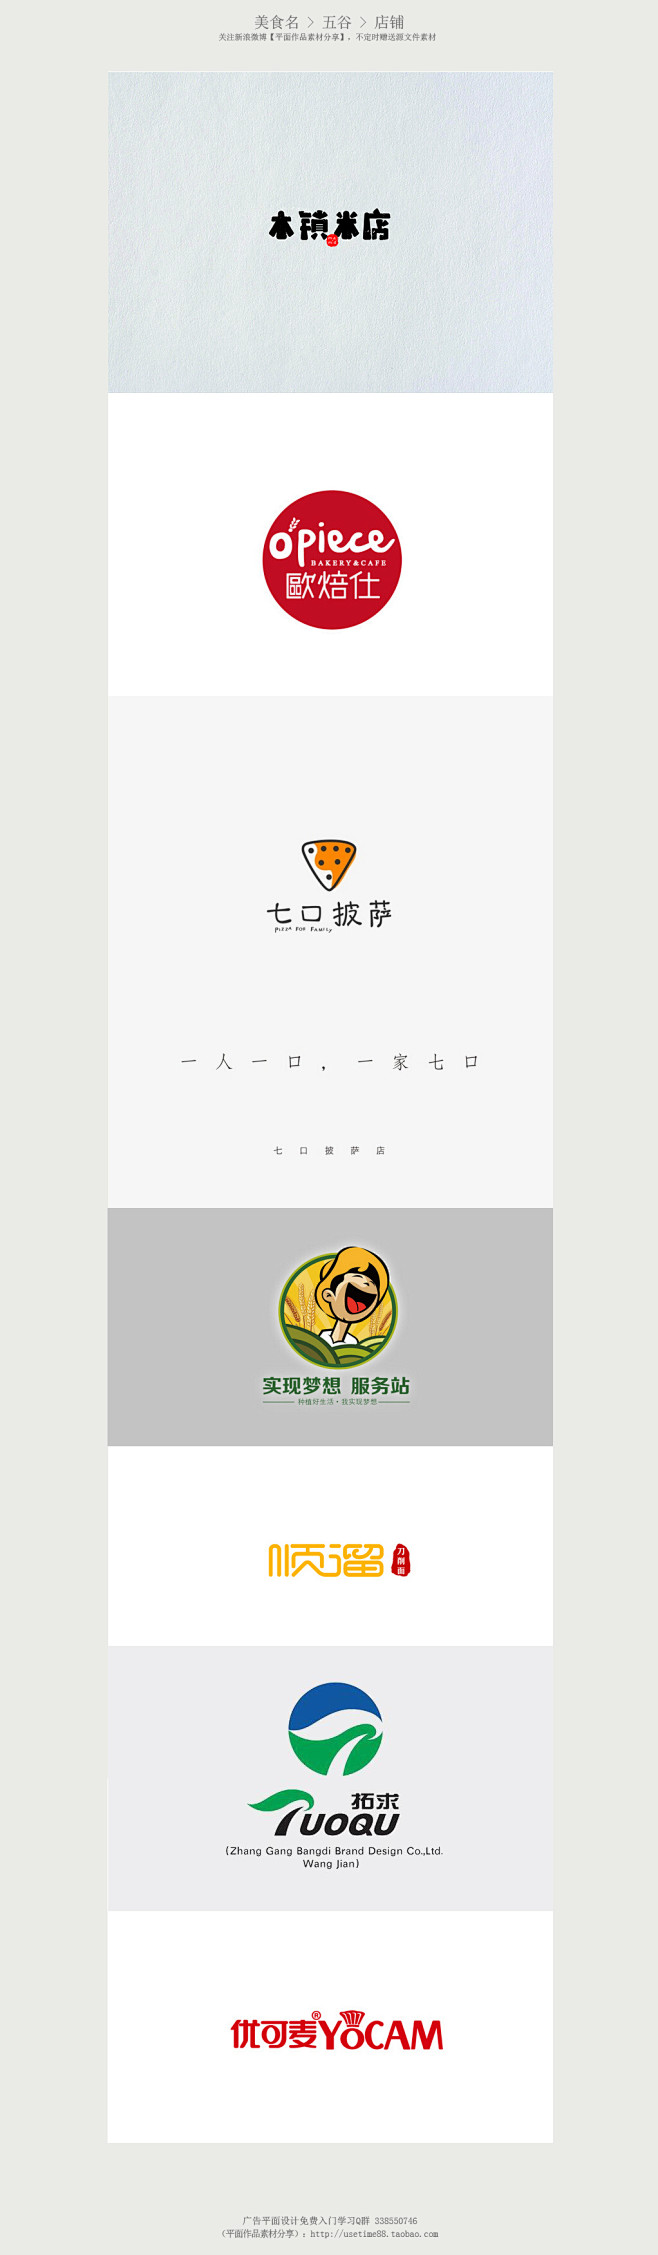 【有关五谷杂粮美食店铺logo设计参考】...